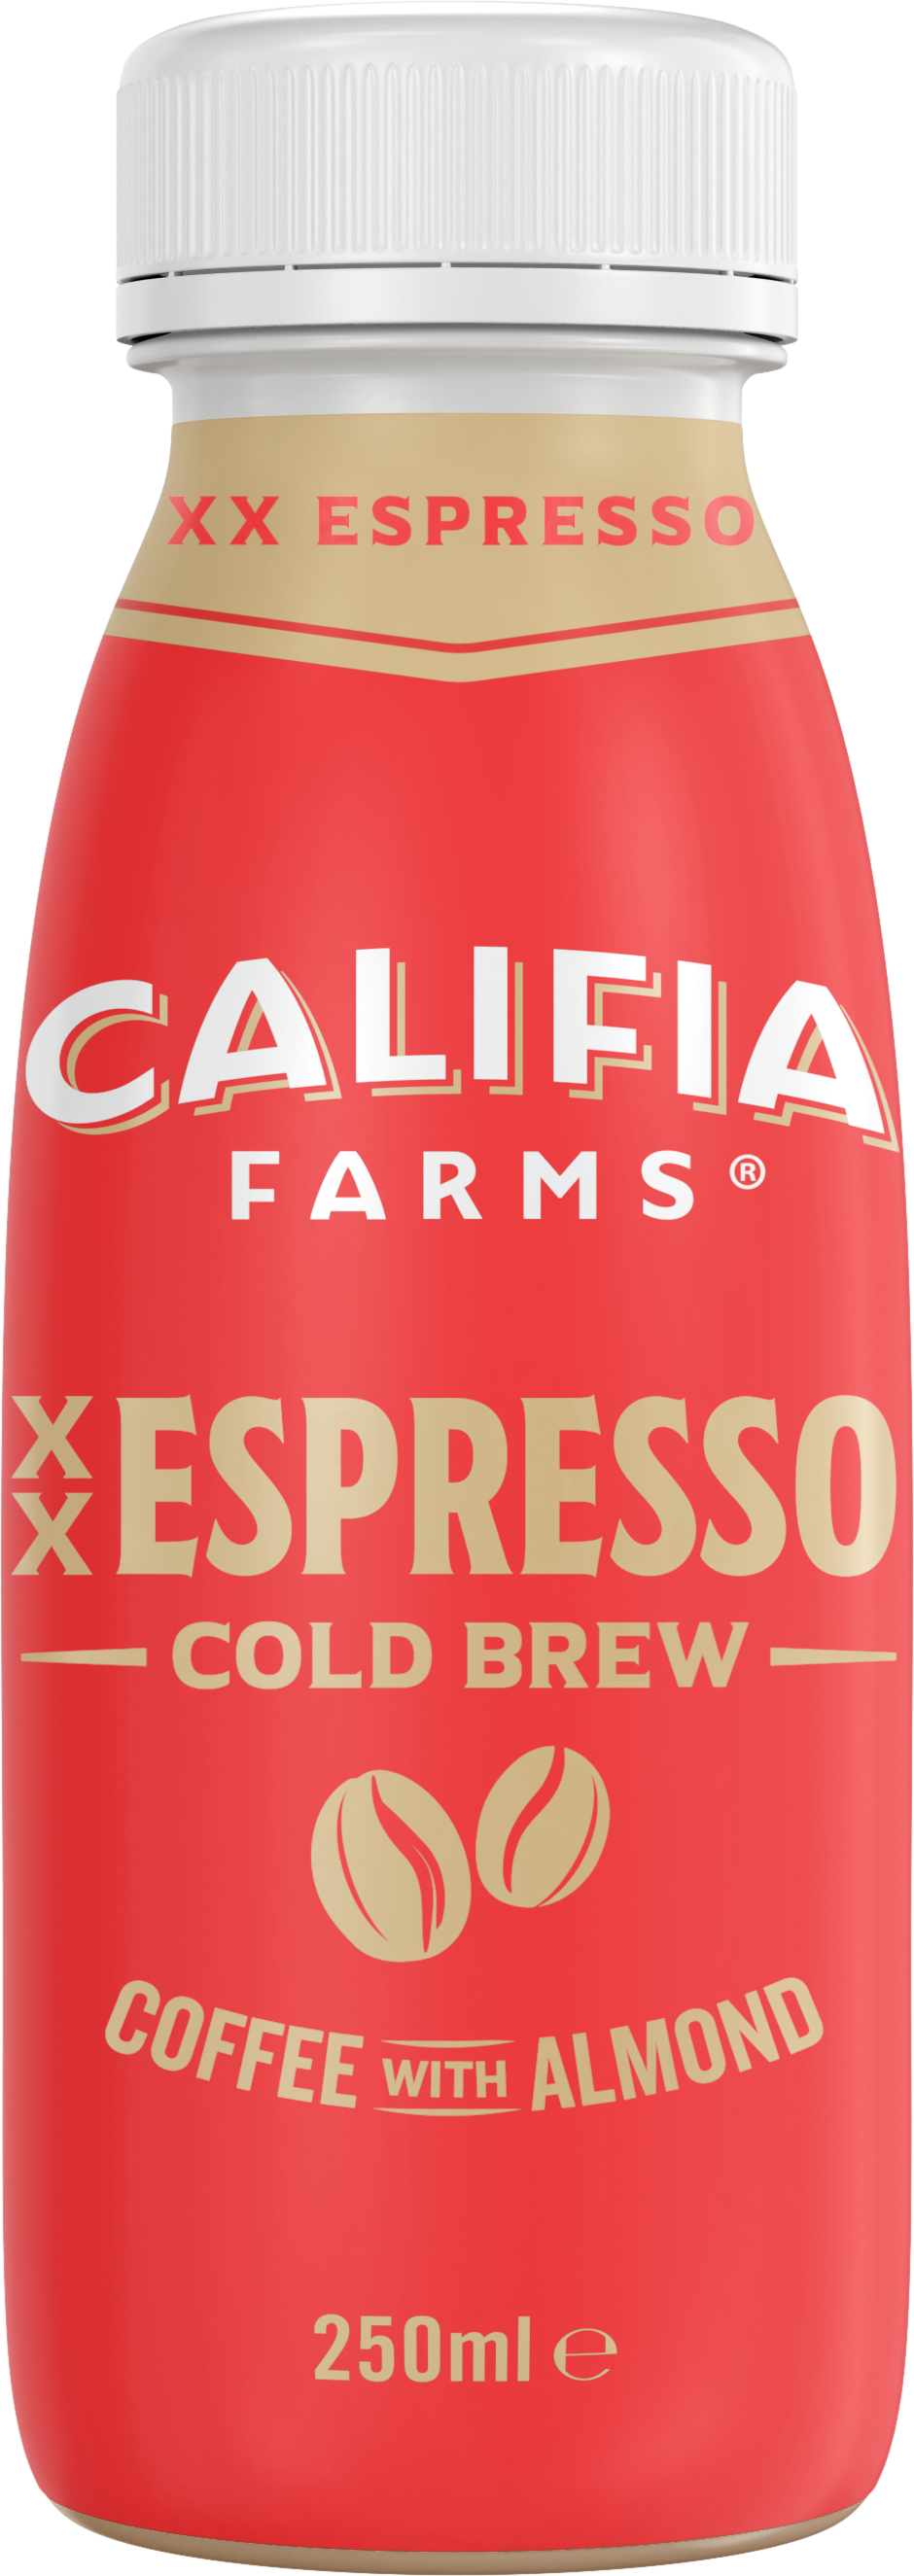 Cold Brew Espresso with Almond Milk